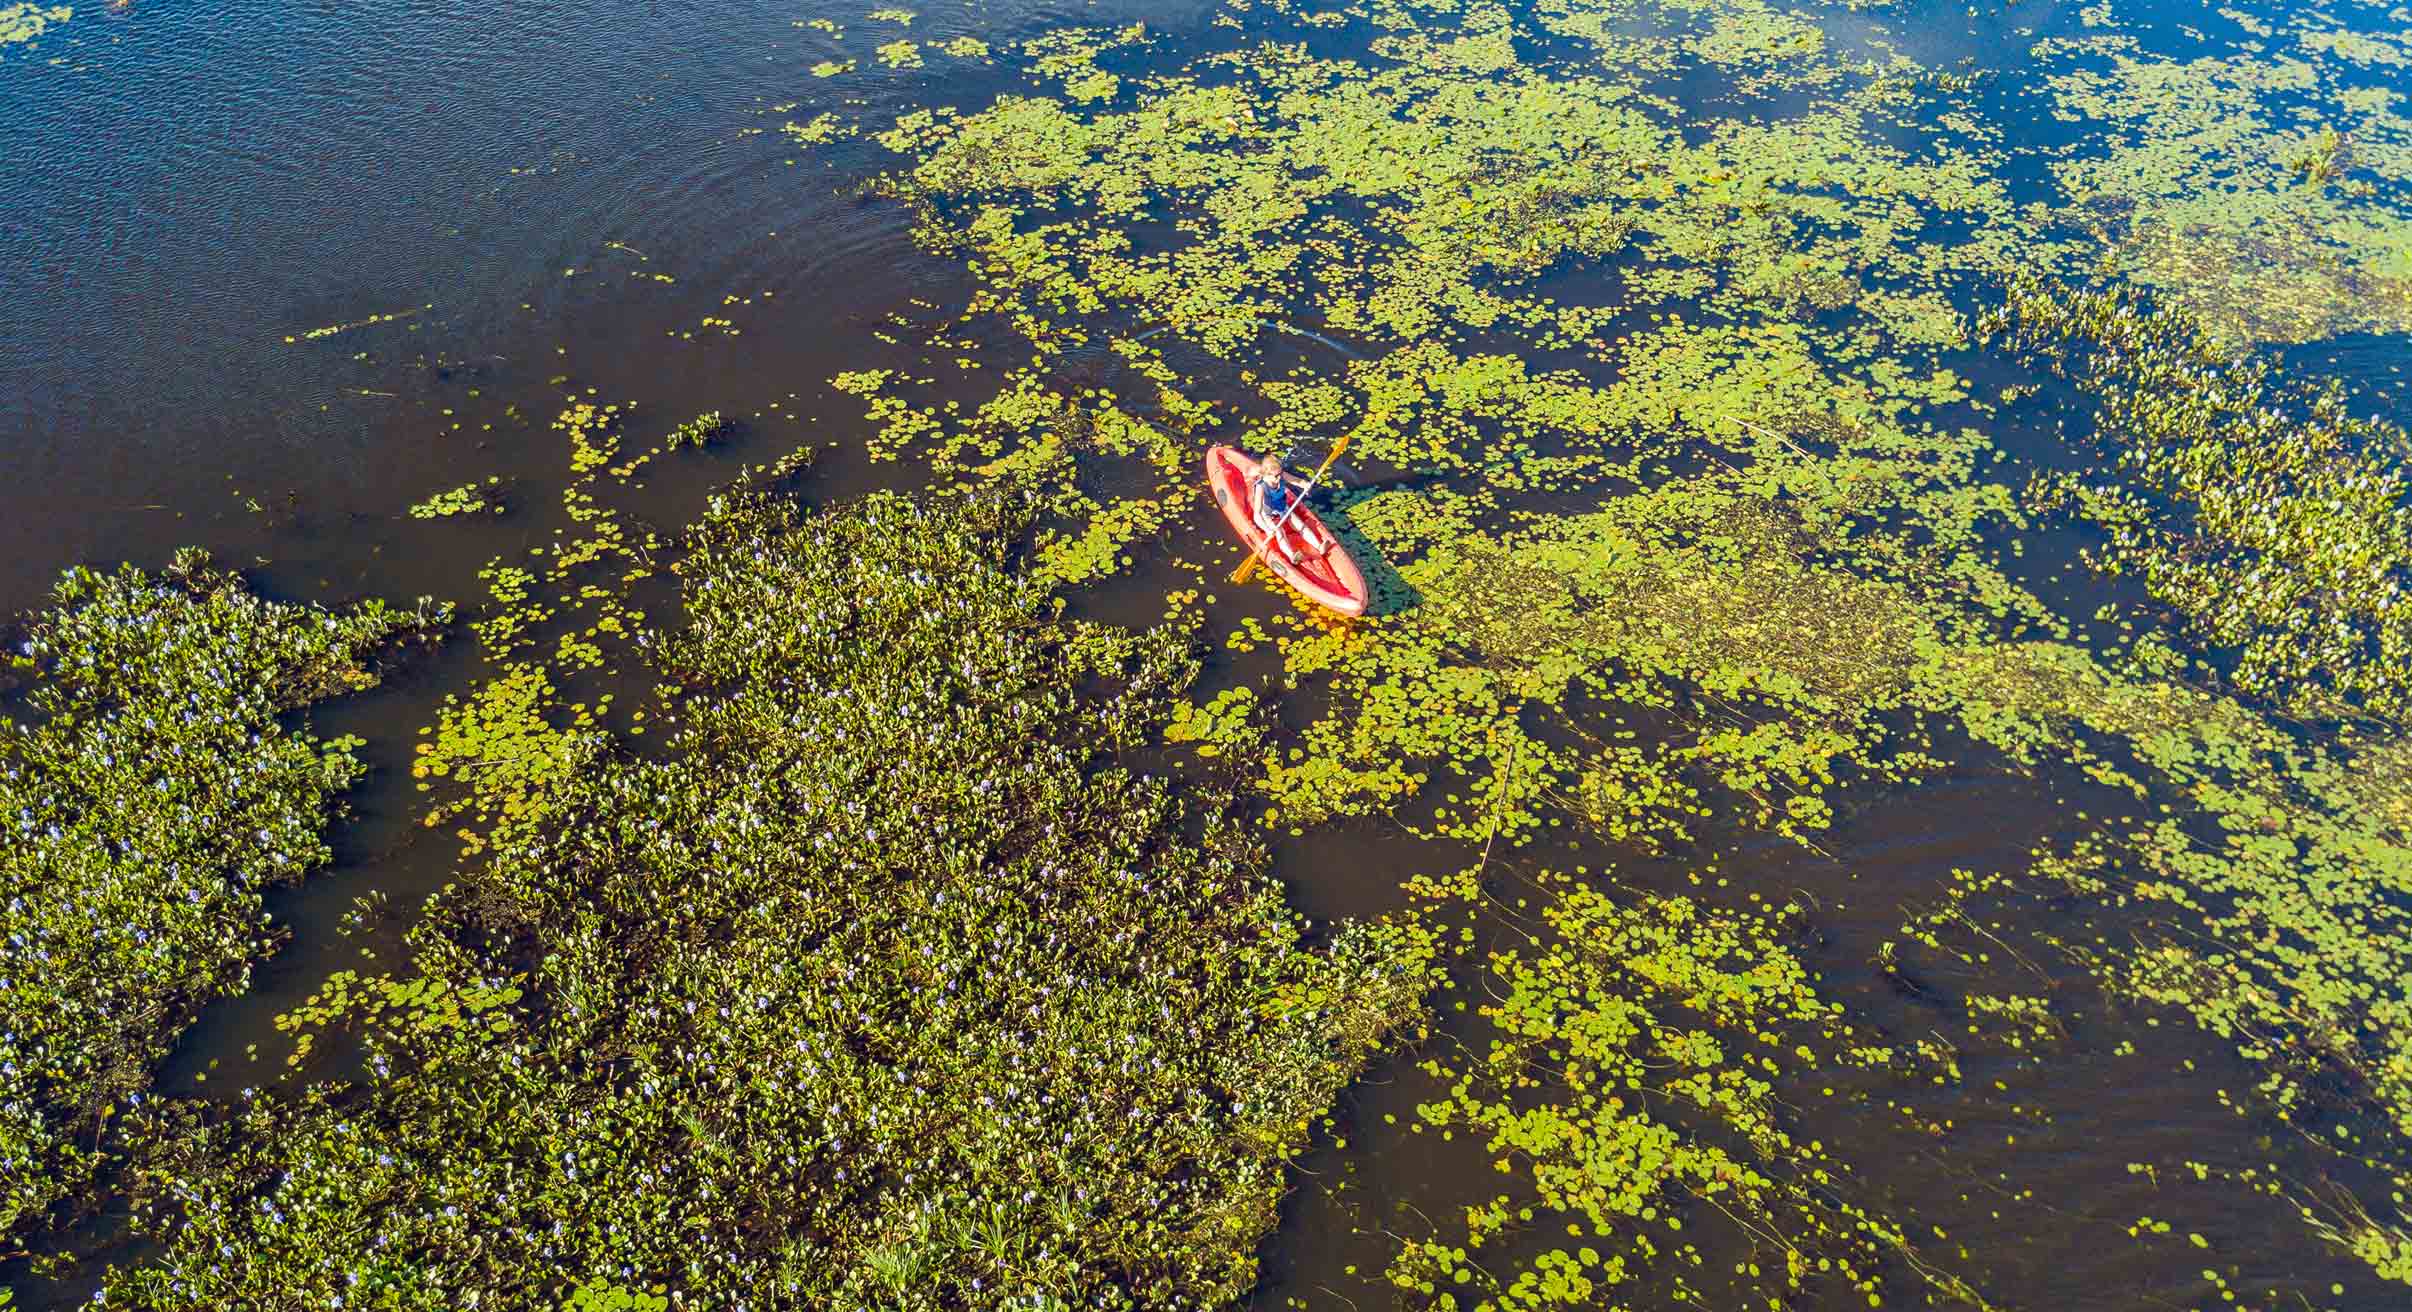 Kayaking in the Ibera Wetlands in Argentina